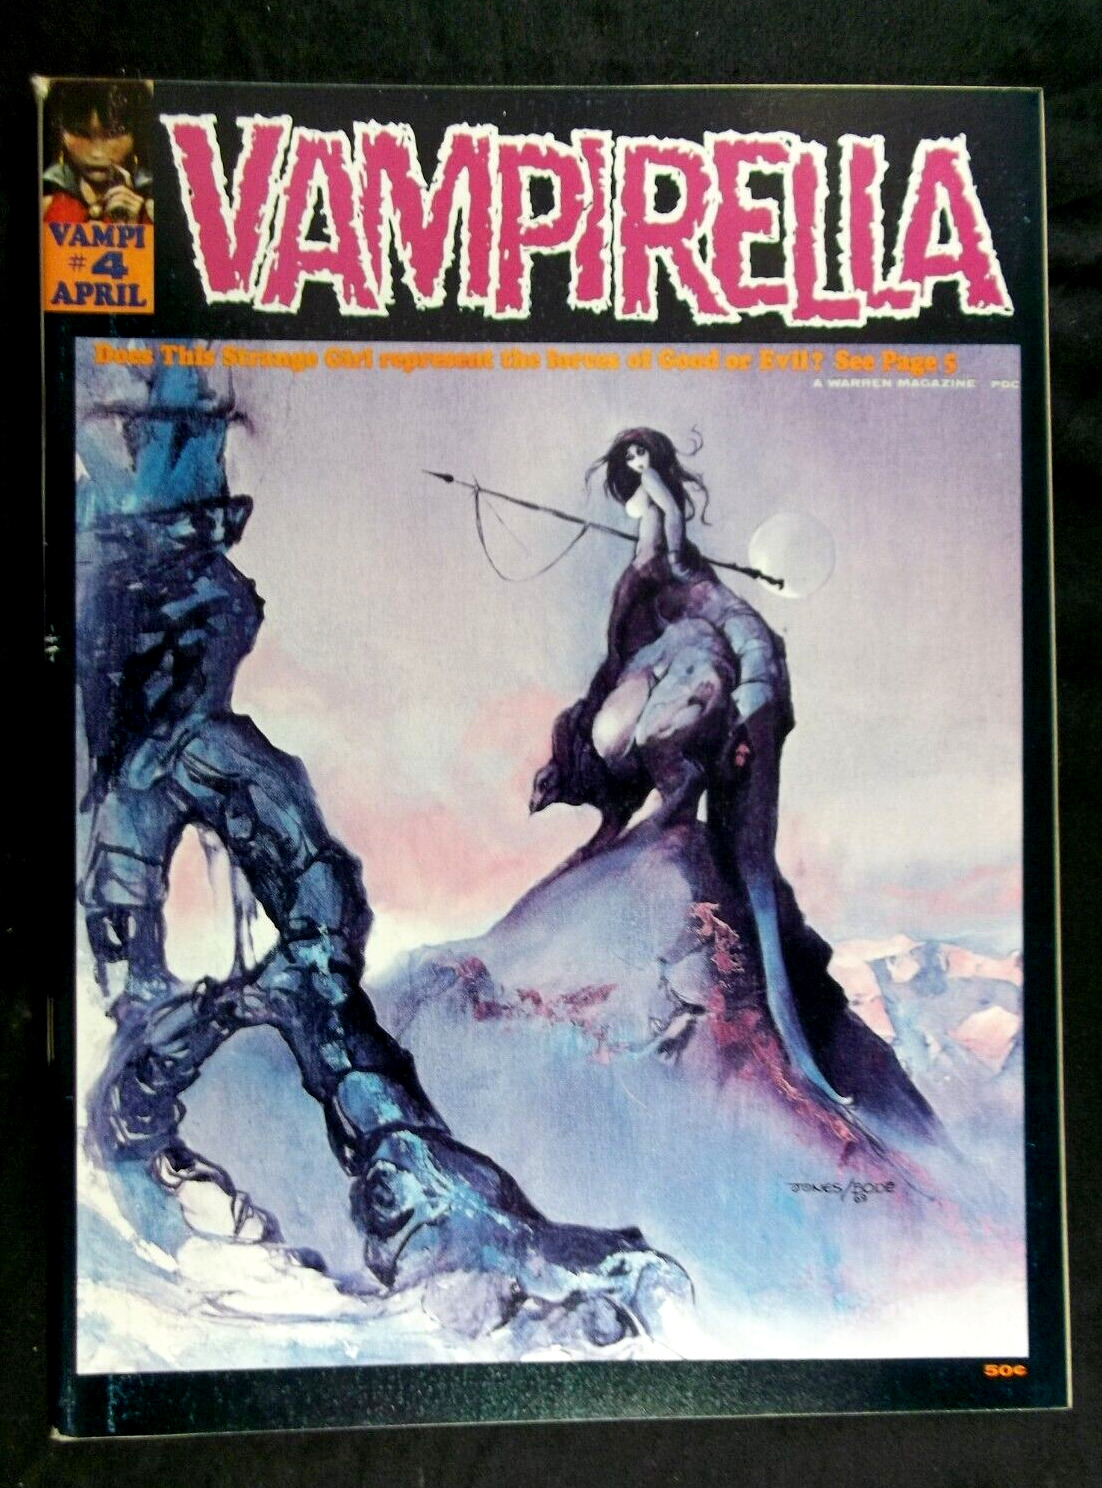 Vampirella #4 FN 6.0 Jeff Jones Cover Art, Vintage Warren Magazine 1970